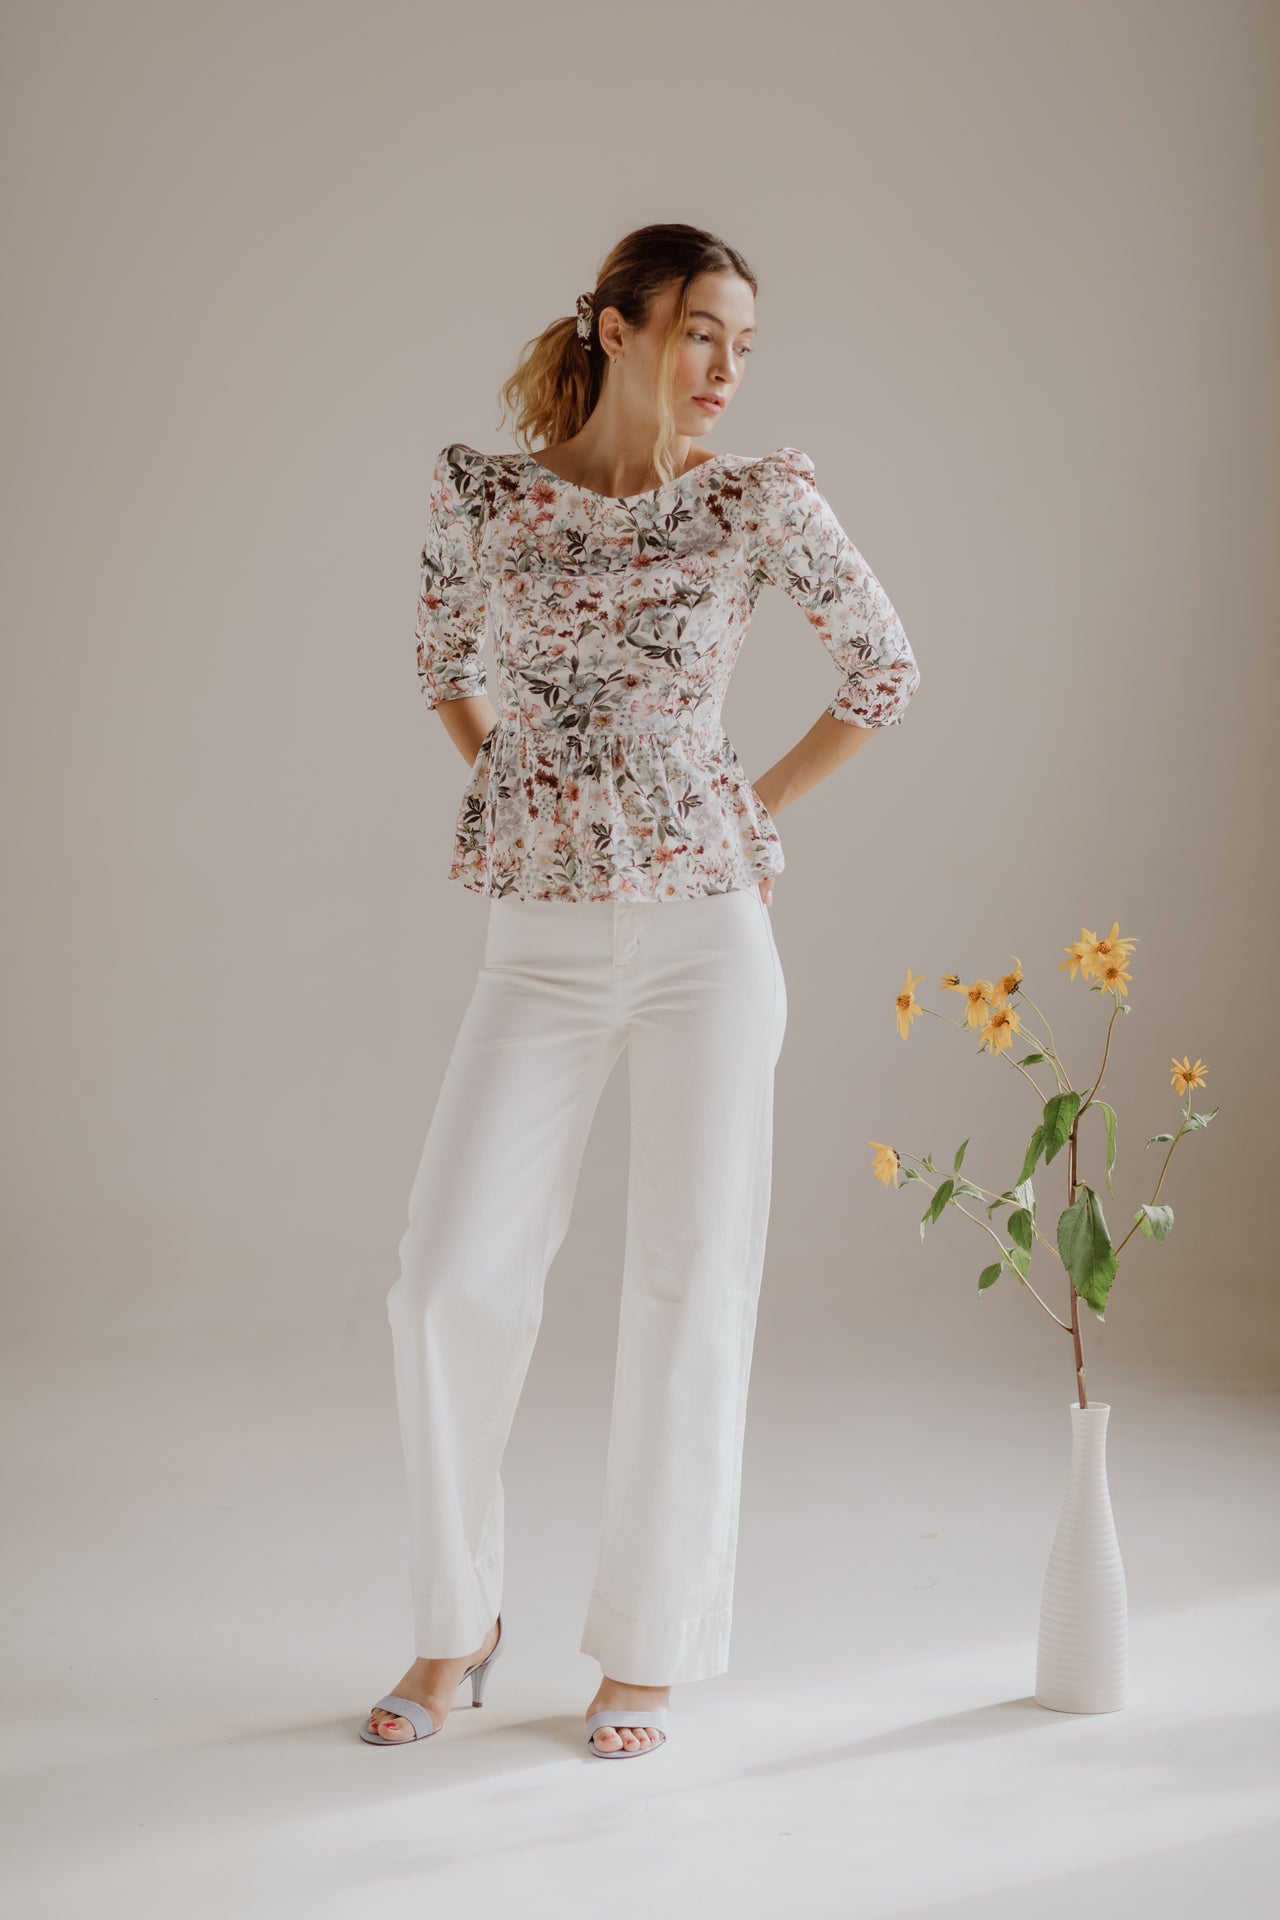 Hannah Bateau Neck Top with Corset Seam Details / Milky White Floral Cotton